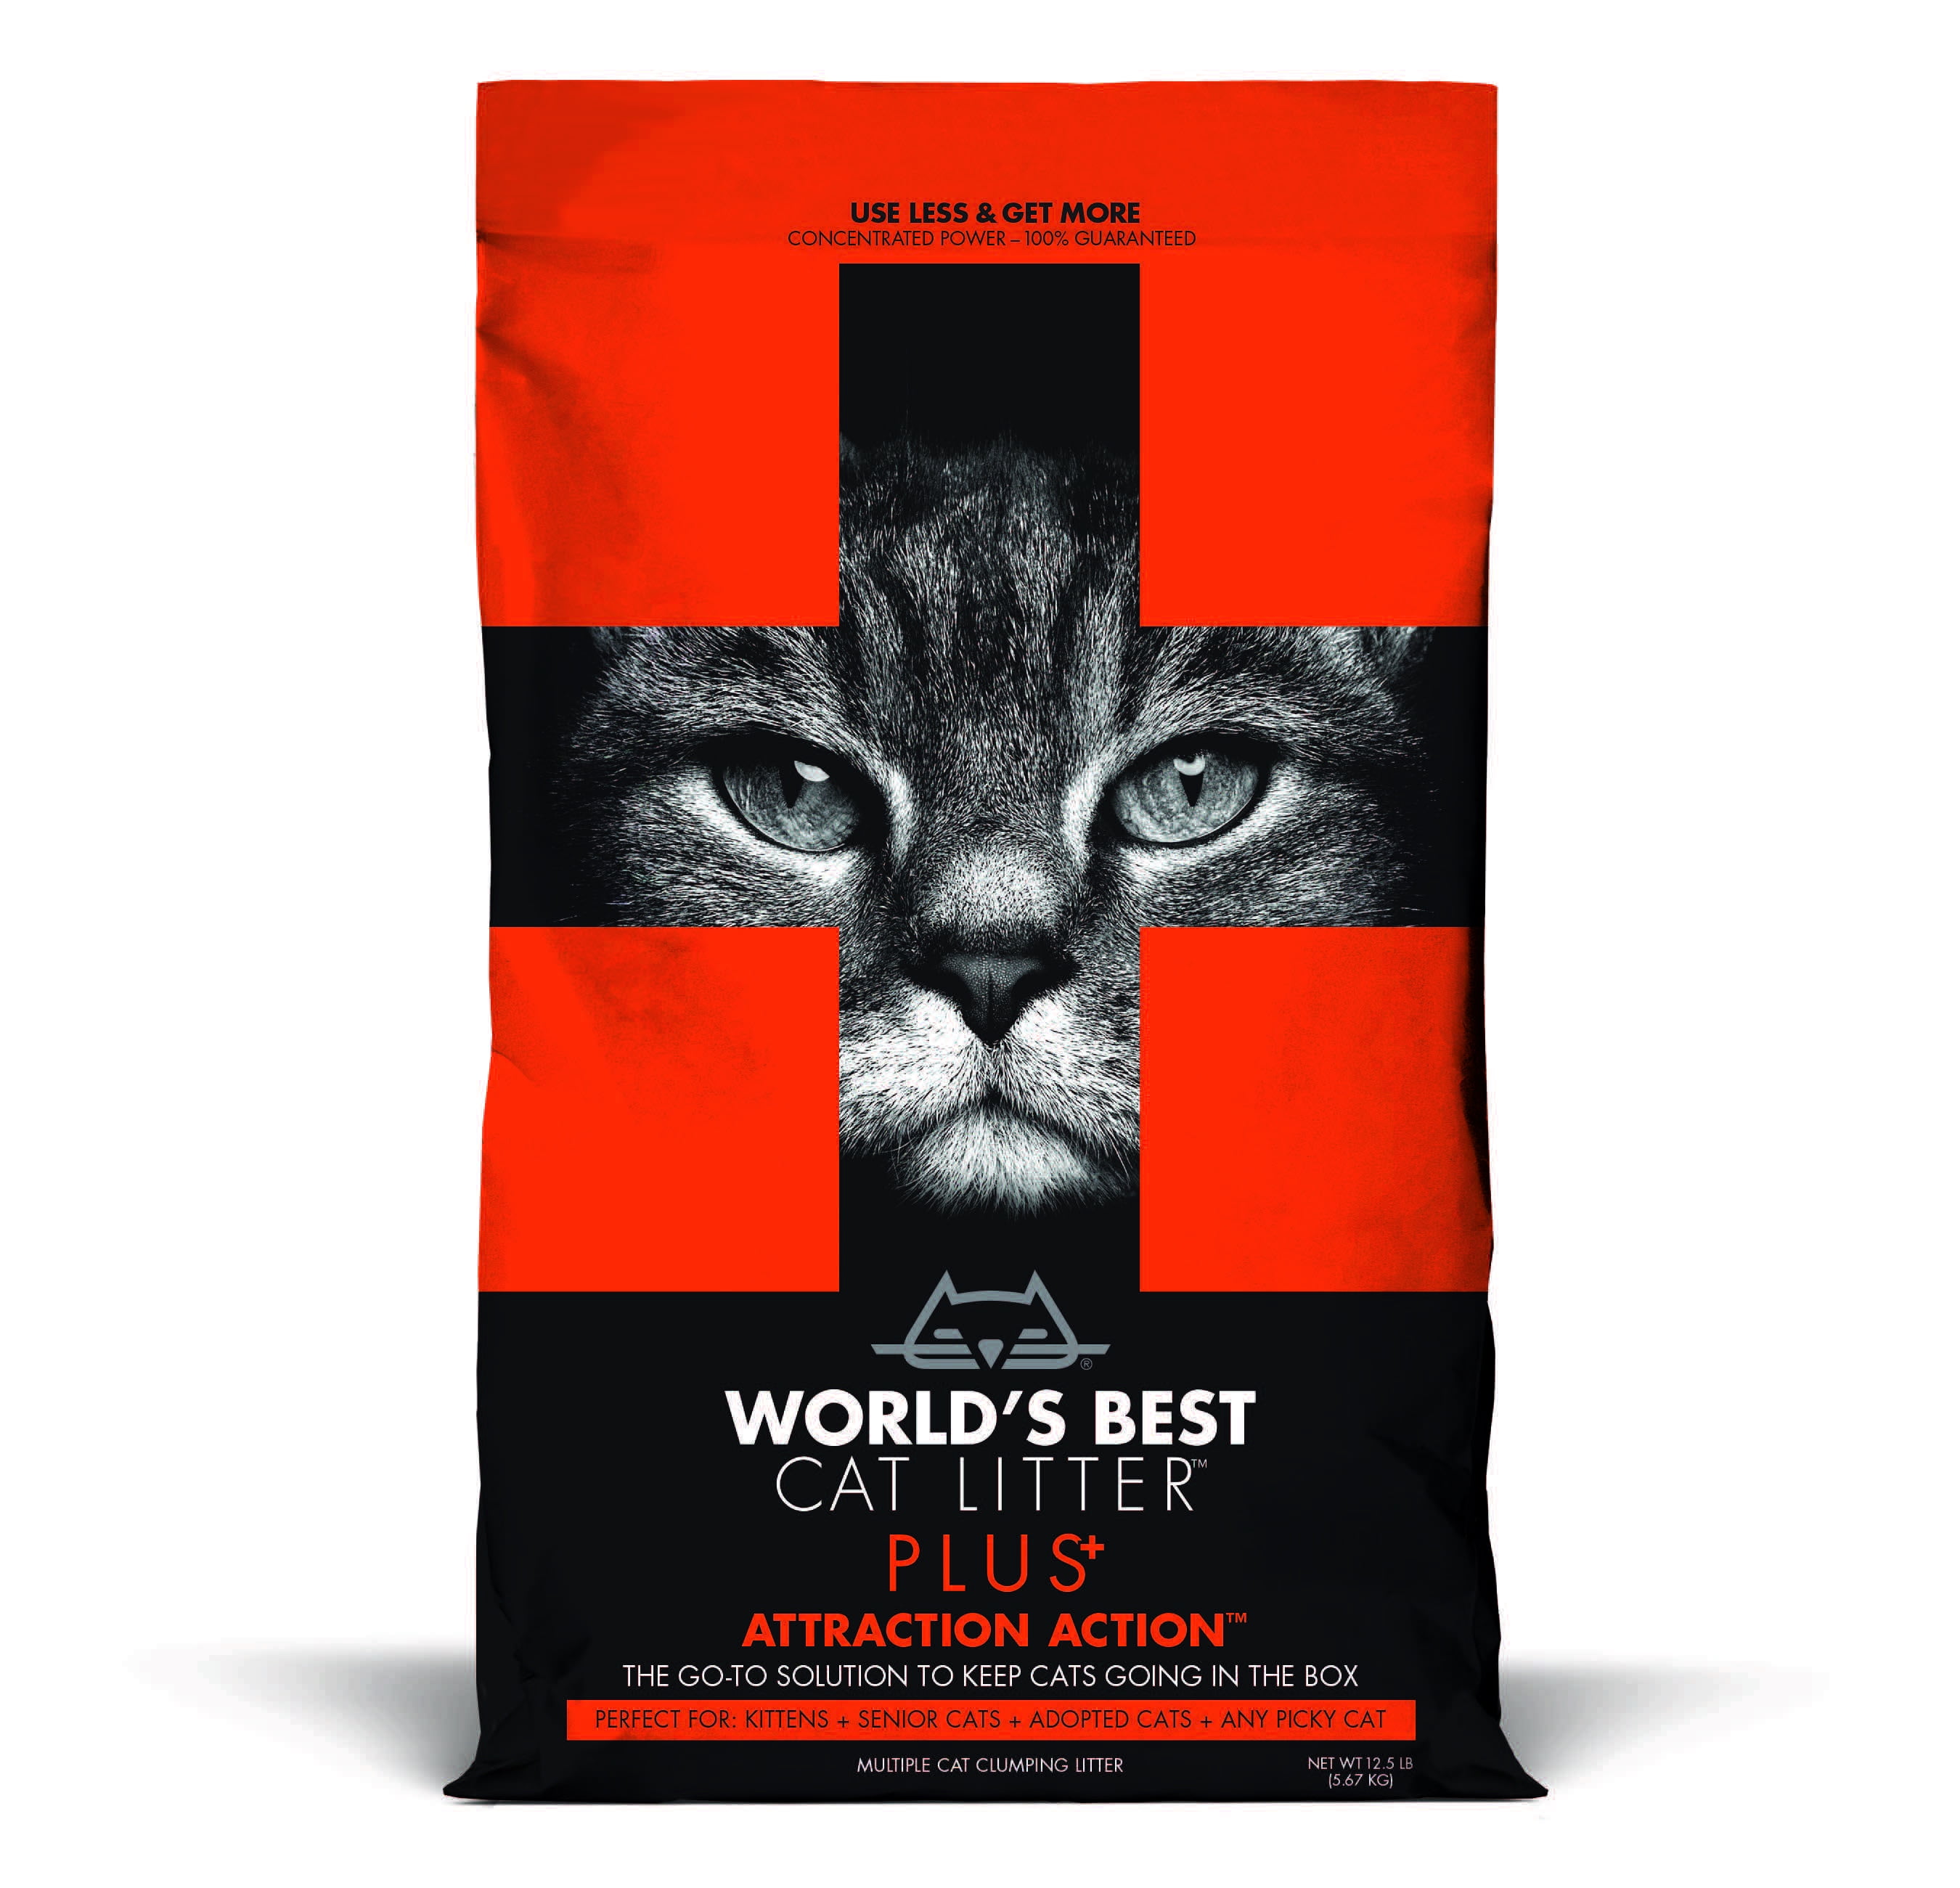 Best Cat Litter Reviews Uk The Best Cat Litter Brands of 2018